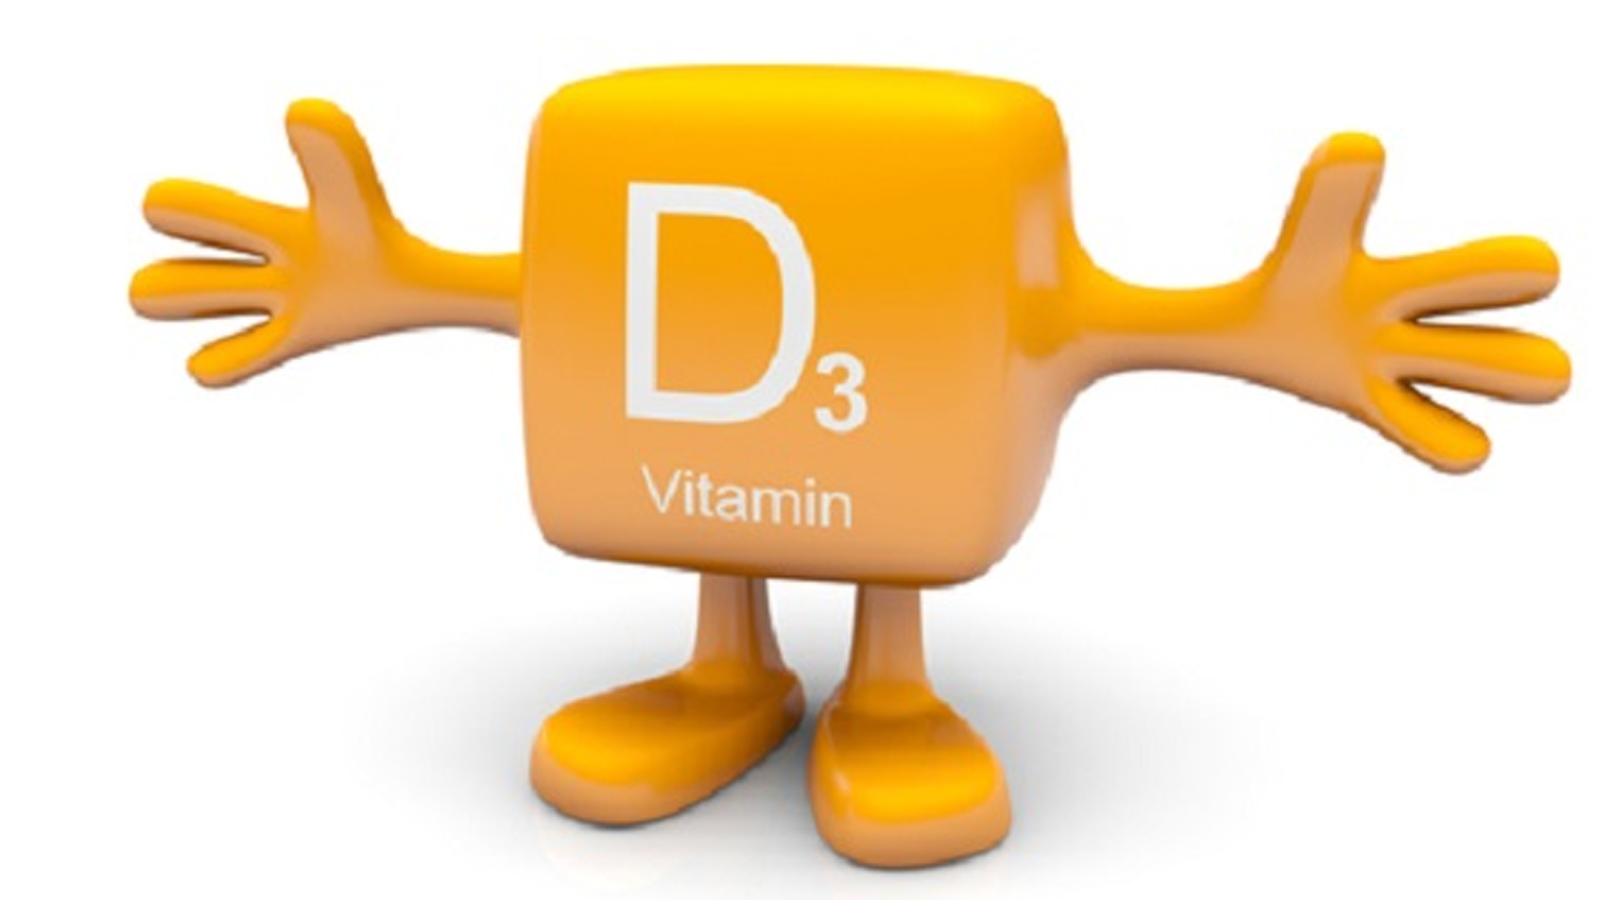 Tại sao vitamin D3 được coi là loại vitamin tốt cho trẻ sơ sinh?
